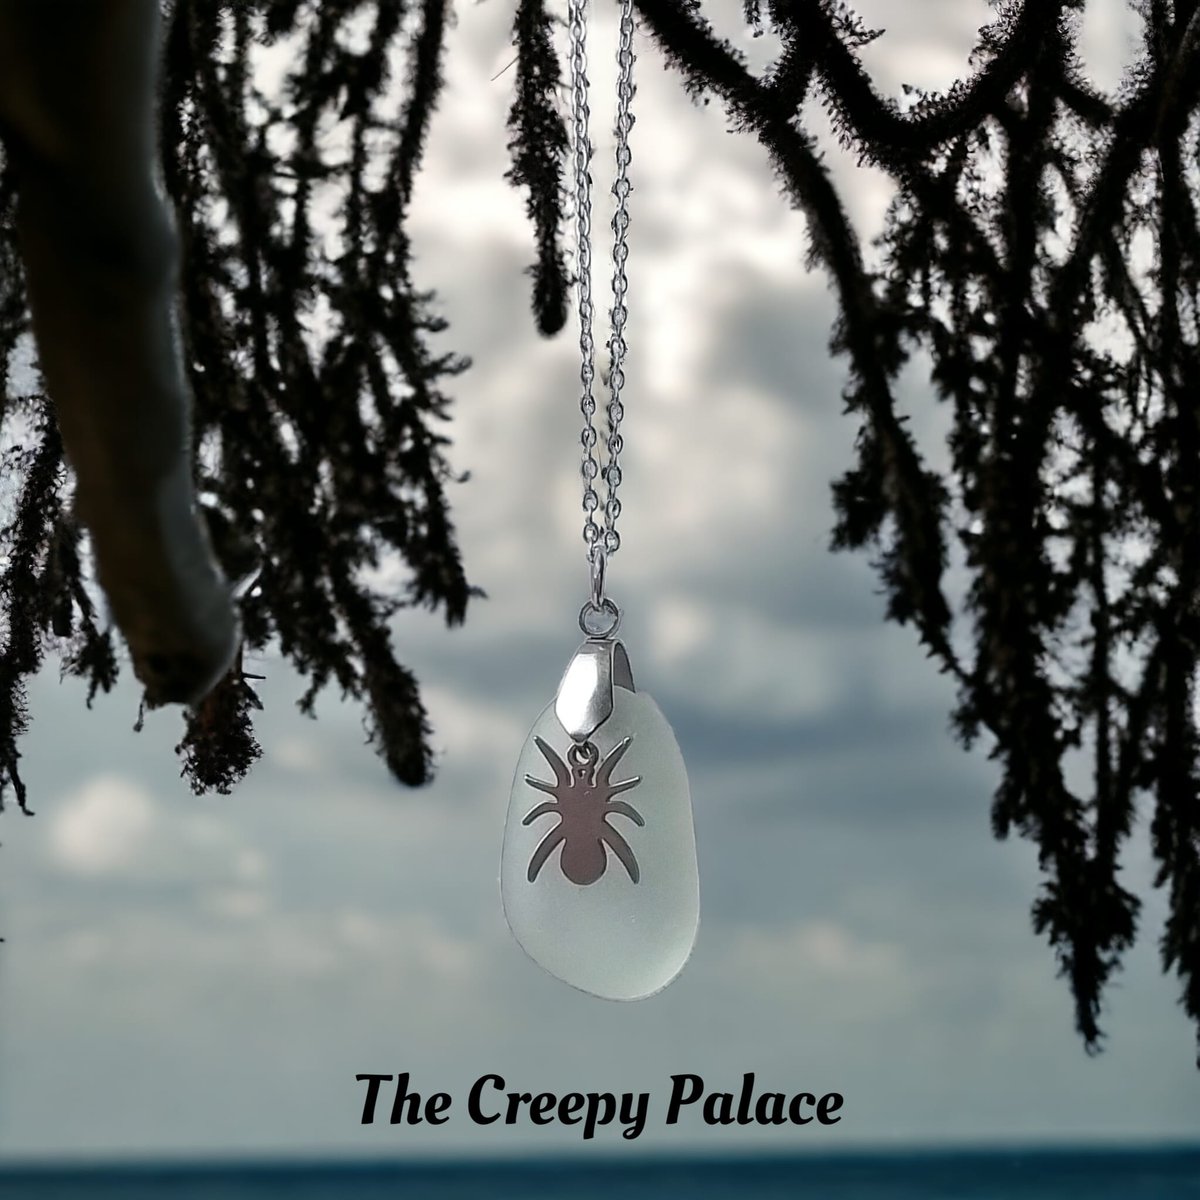 Creepy cute spider Seaglass necklace 
Available tomorrow on Etsy 🖤🕷️
#craftmakersuk  #UKGifthour #smallbizzsunday #SmartSocial #HandmadeHour #UKGiftAM #handmadeinbritain #BizBubble #shopindie #UKGiftHour #bizhour #Craftsuk #craftbizparty #etsyfinds #thecreepypalace